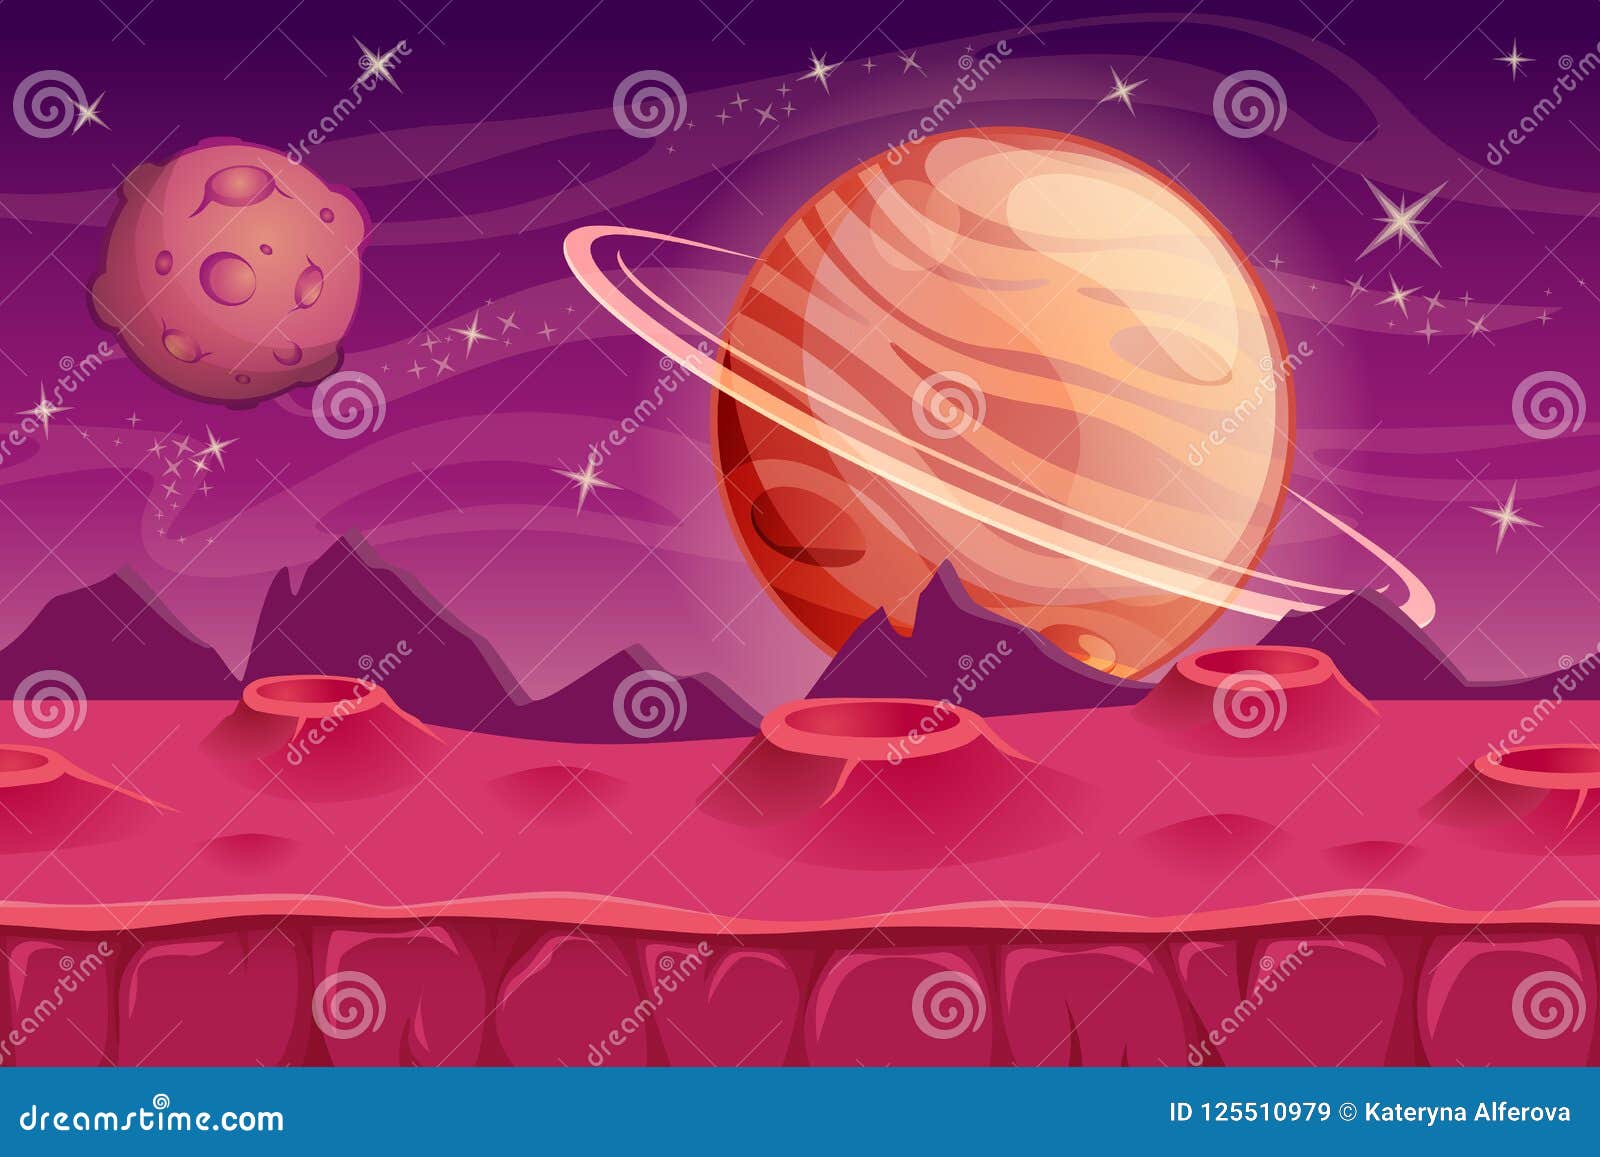 幻想ui比赛的空间背景外籍背景横向向量例证 插画包括有作用 月亮 逗人喜爱 孩子 太阳